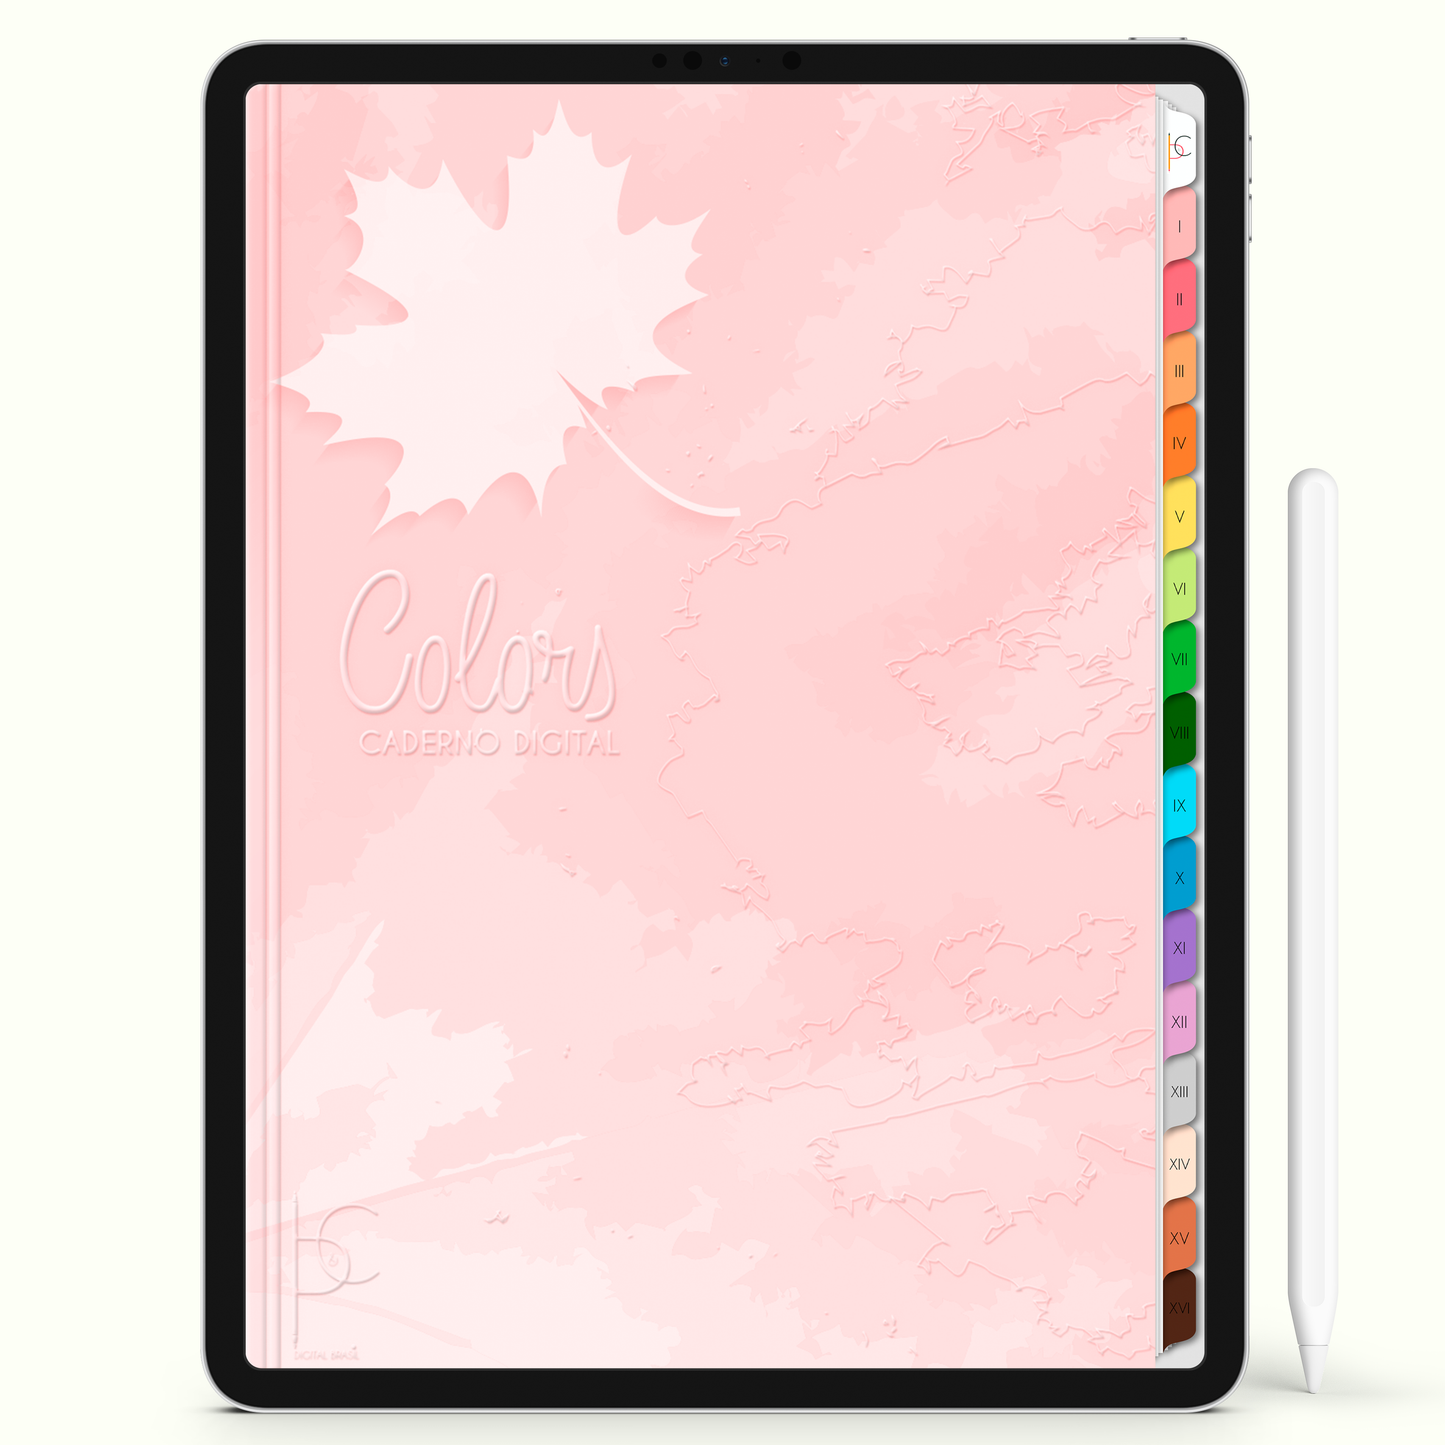 Caderno Digital Colors Mundo em Cores 16 Matérias • Para iPad e Tablet Android • Download instantâneo • Sustentável